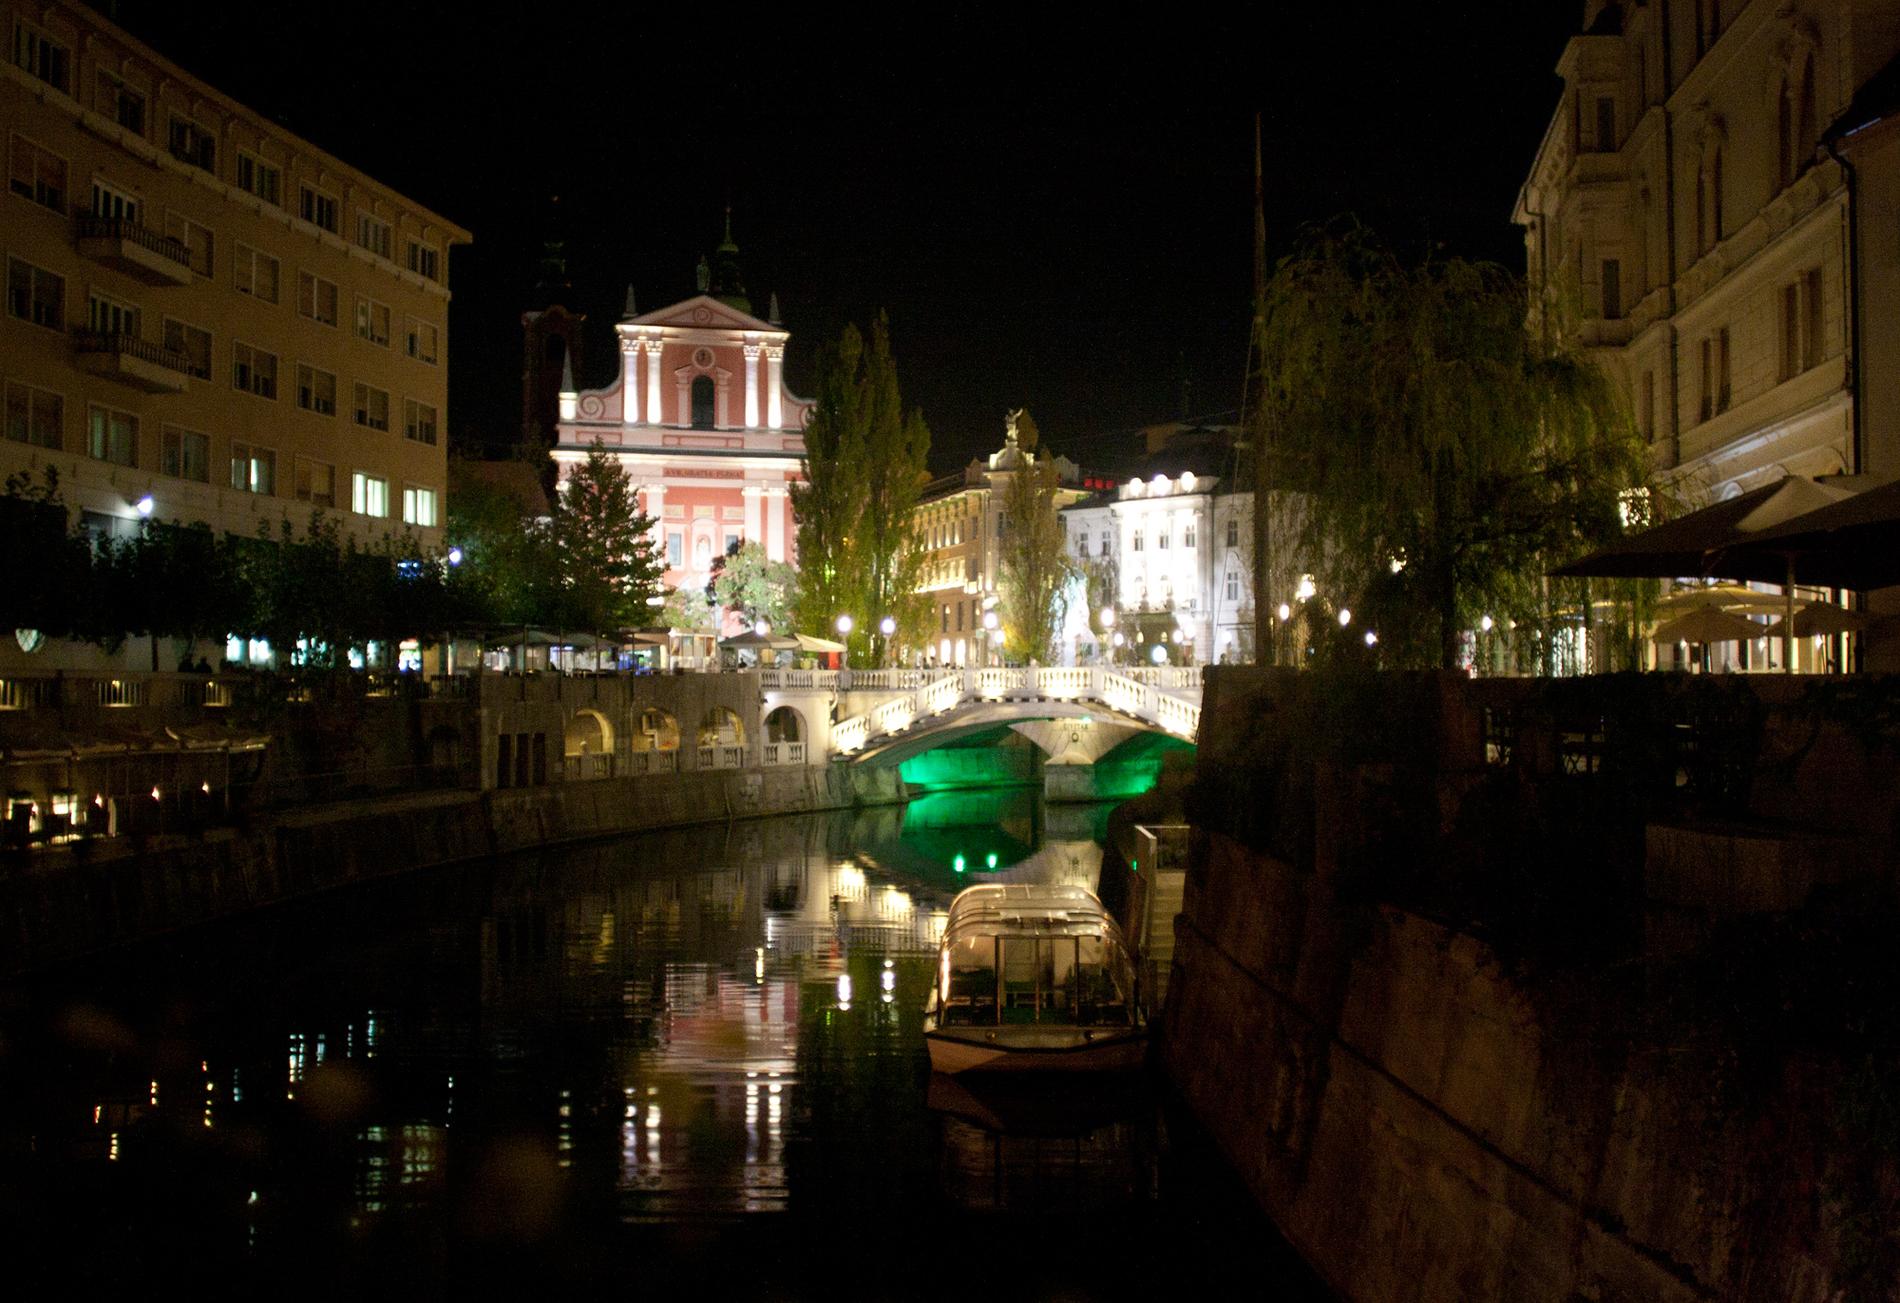 Slovenien Ljubljana i kvällsskrud. Vännerna blev förvånade över hur vackert uppbyggd staden var efter kriget och vill passa på att ge ett tips till alla nygifta: "Varför åka till Venedig eller Florens där det är så mycket folk, när man kan åka till en stad som lugna och makalöst vackra Ljubljana?" Här spenderade de sin överlägset lyxigaste natt. Den lilla Nissan fick snällt kliva åt sidan för ett fyrstjärnigt hotell med frukostbuffé - för 300 kronor var.